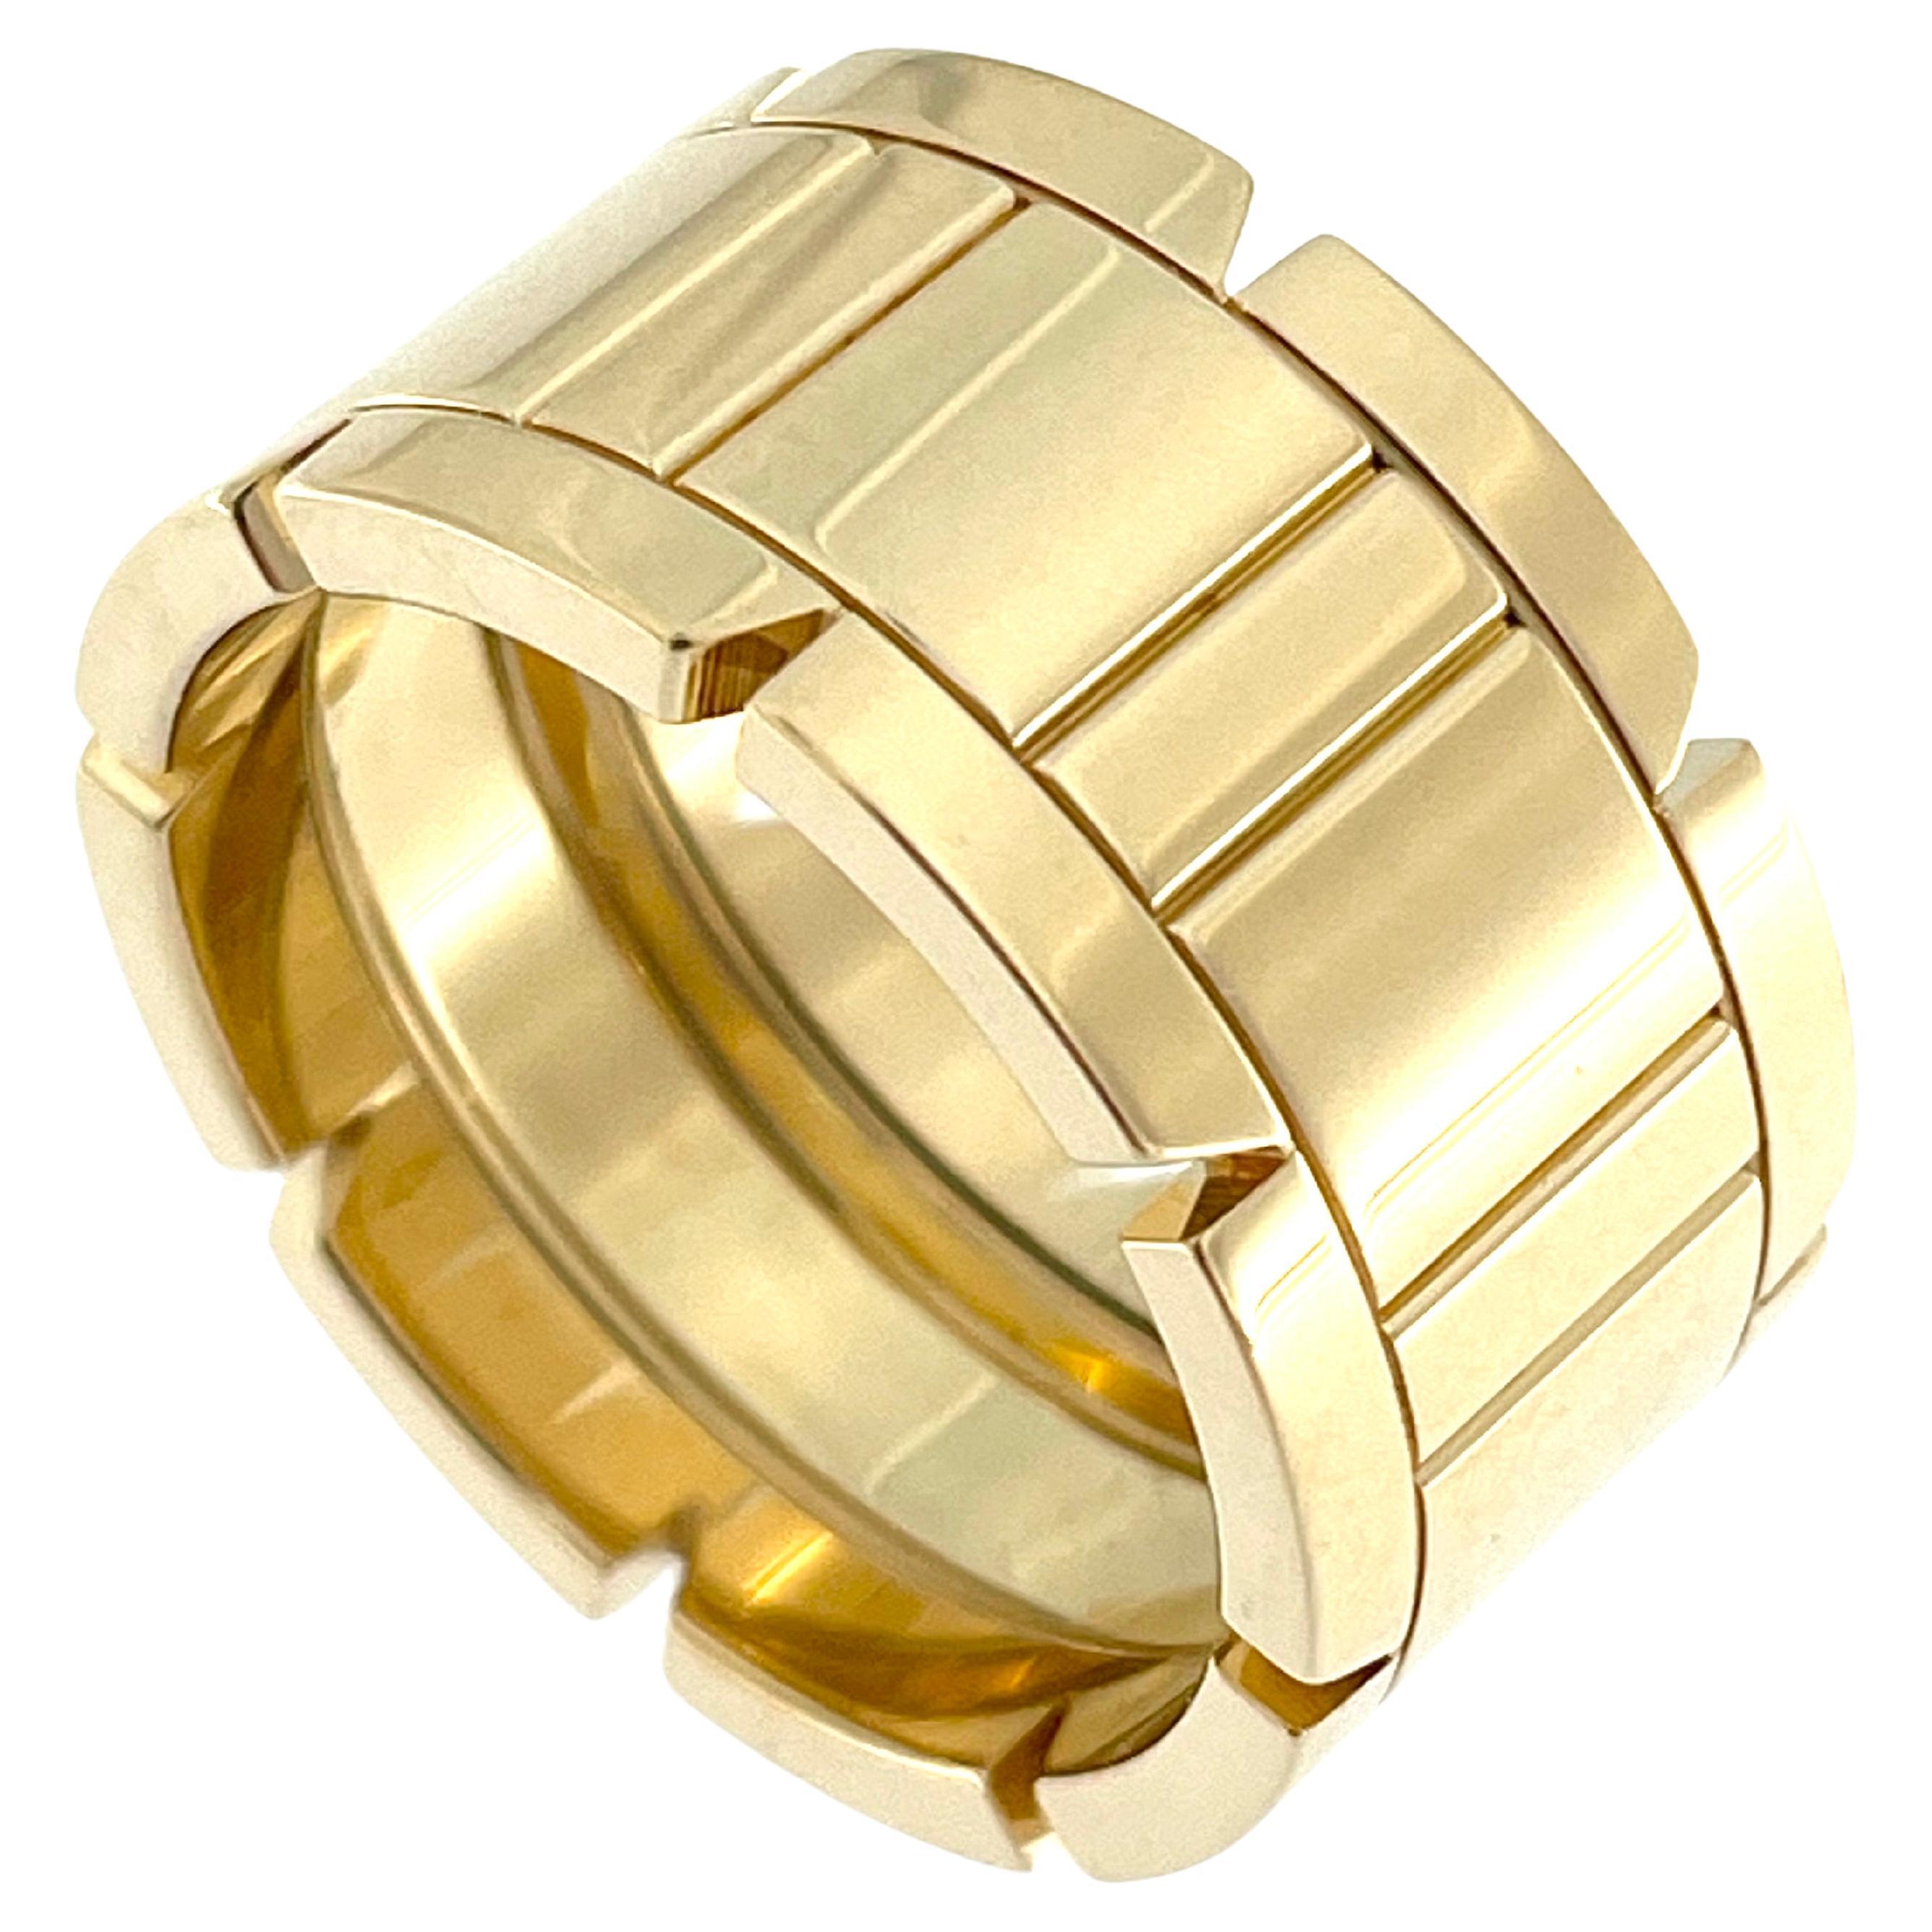 Cartier "TANK" 18karat Yellow Gold Band Ring Large Model